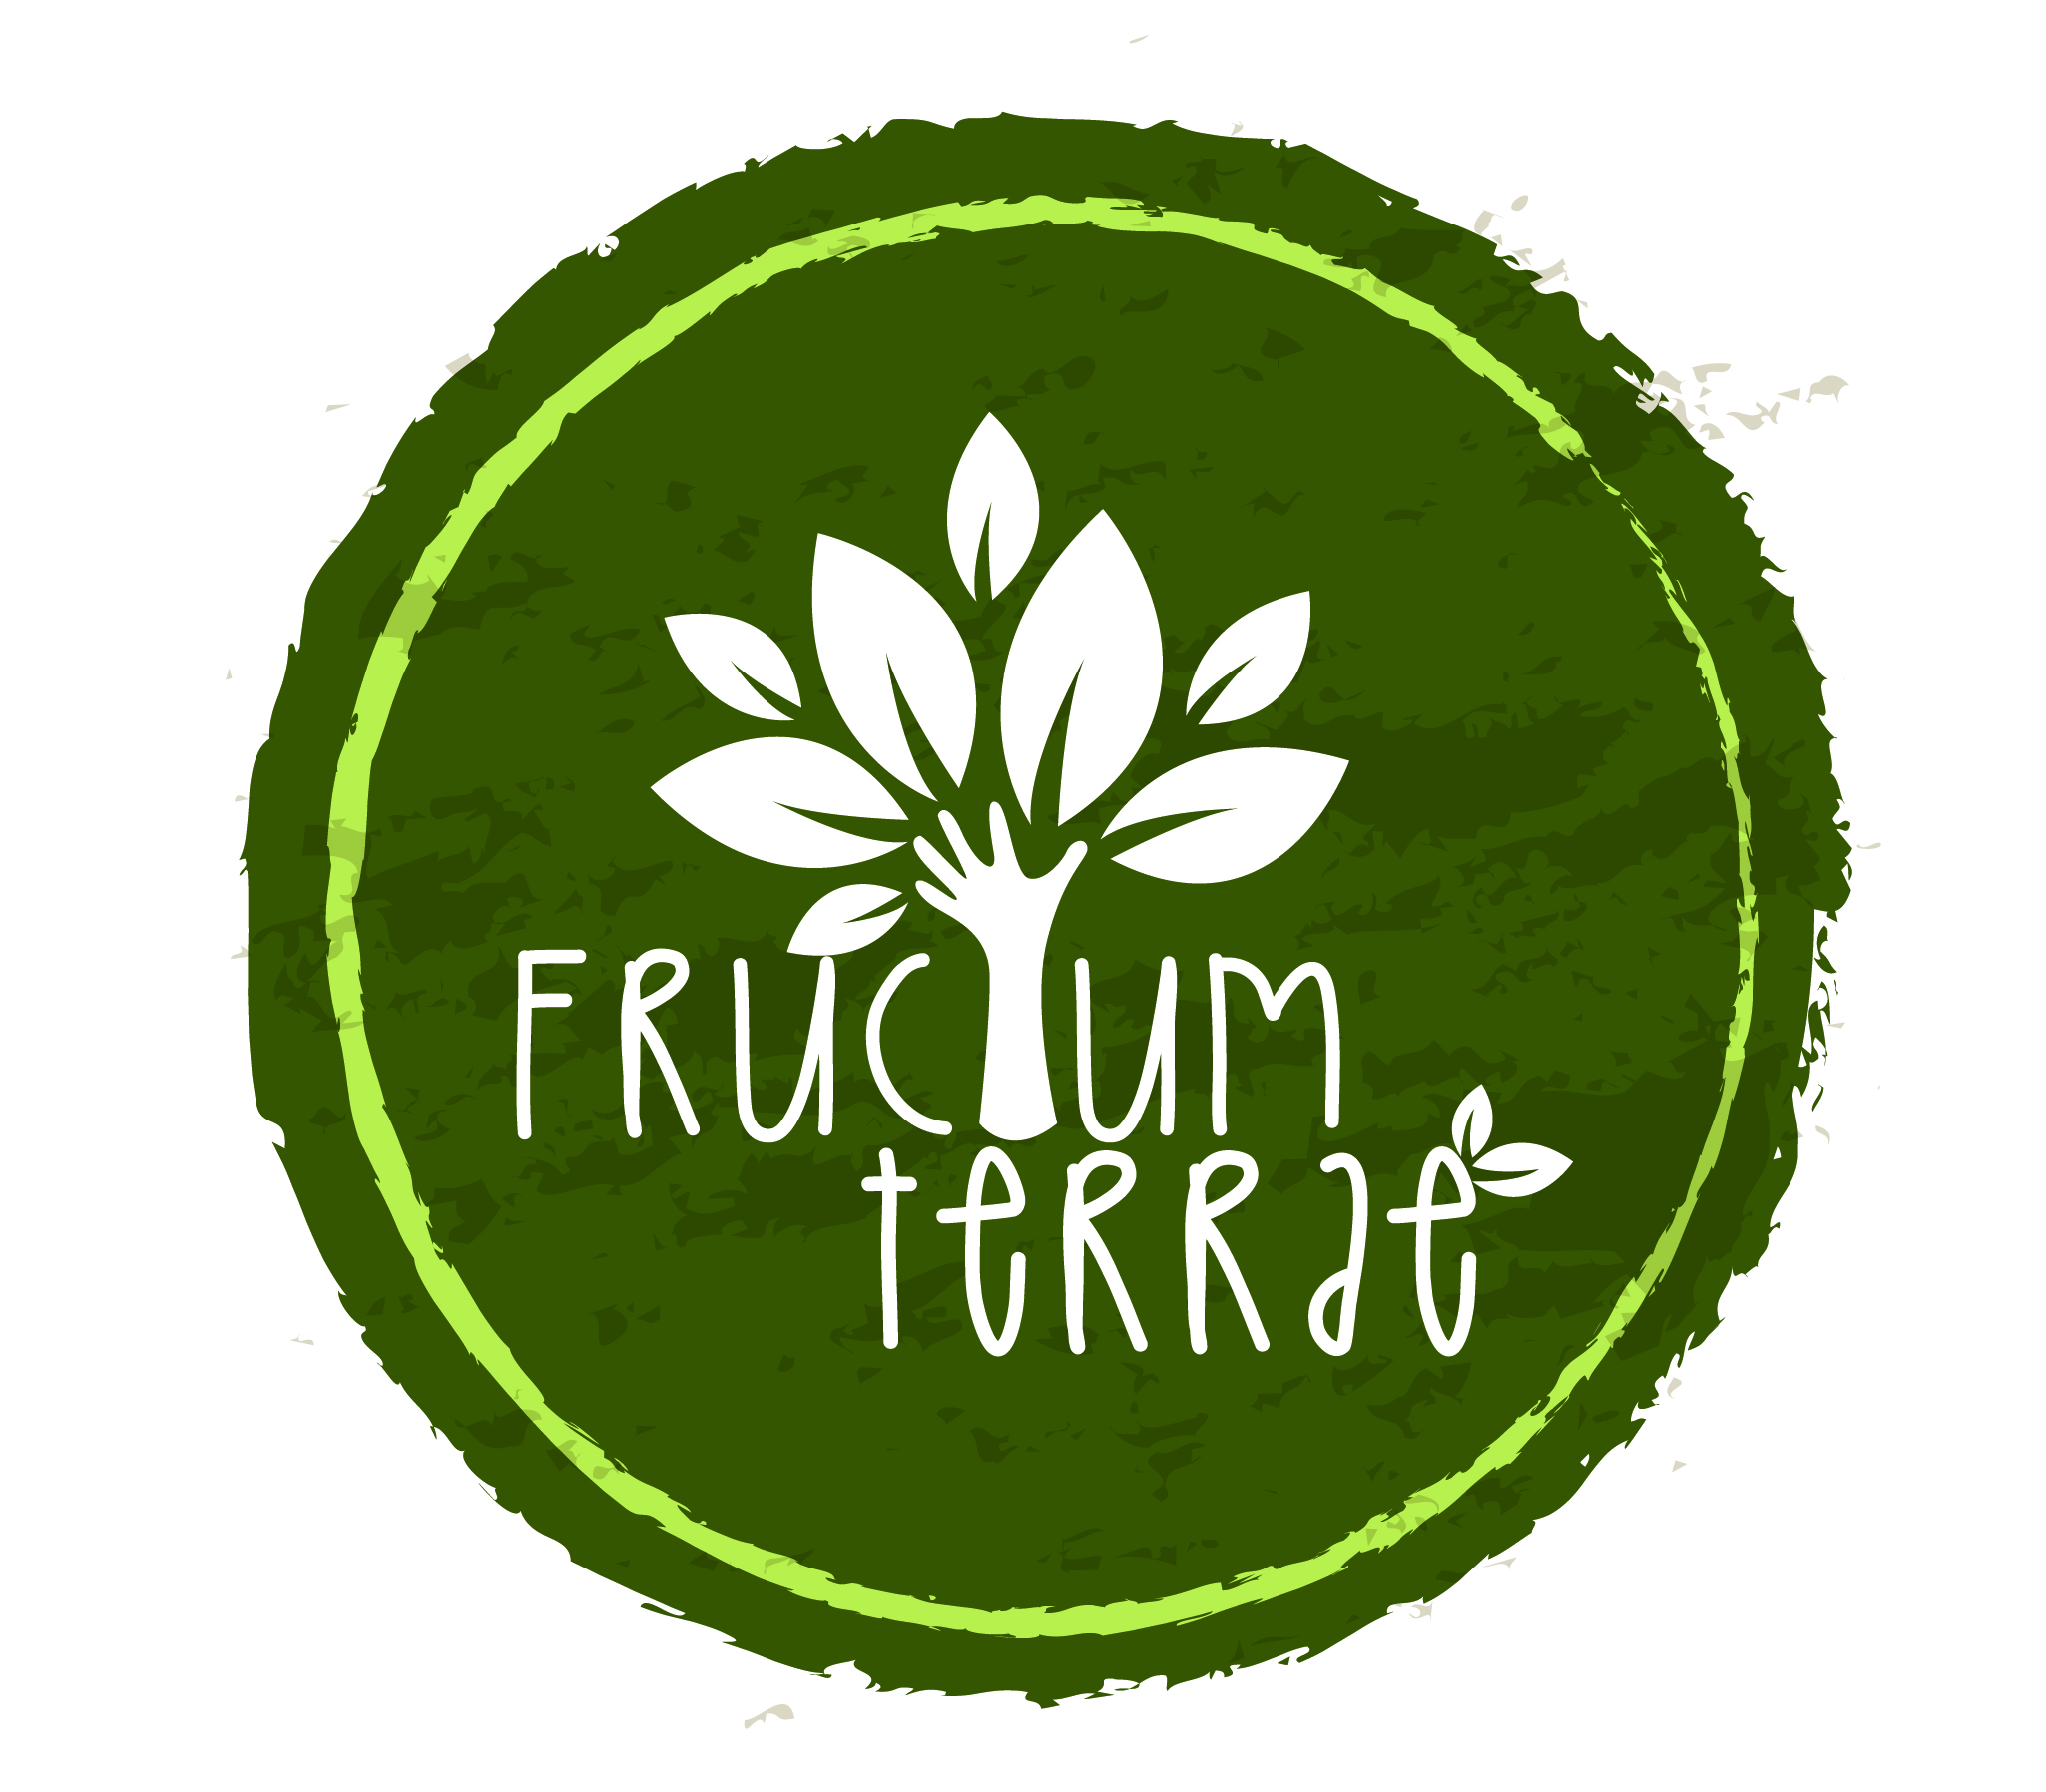 Fructum Terrae